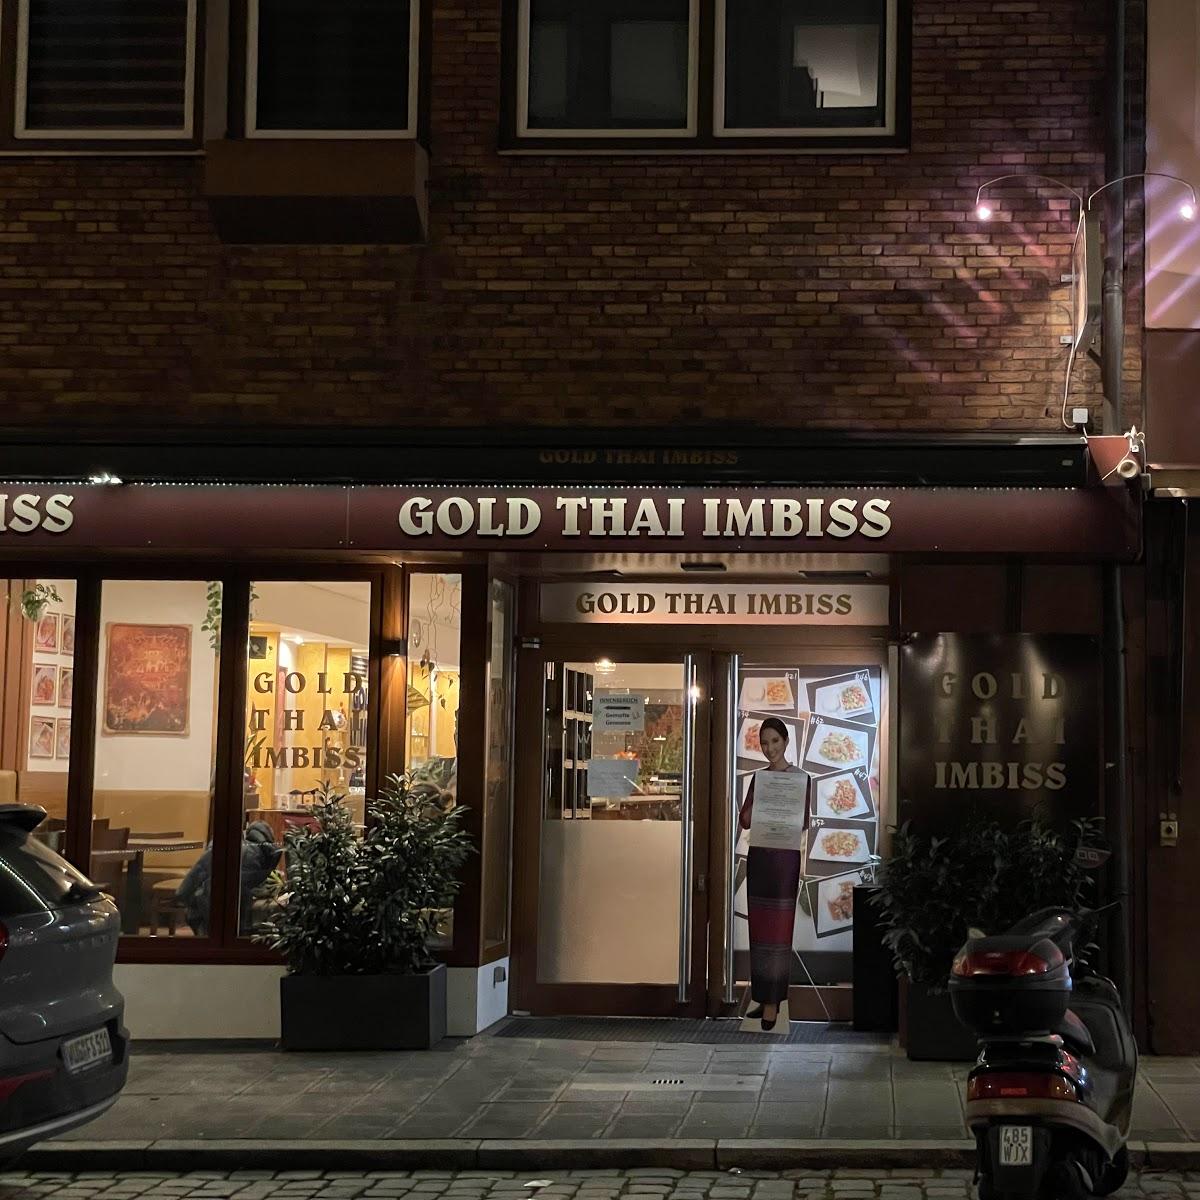 Restaurant "Gold Thai Imbiss" in Nürnberg